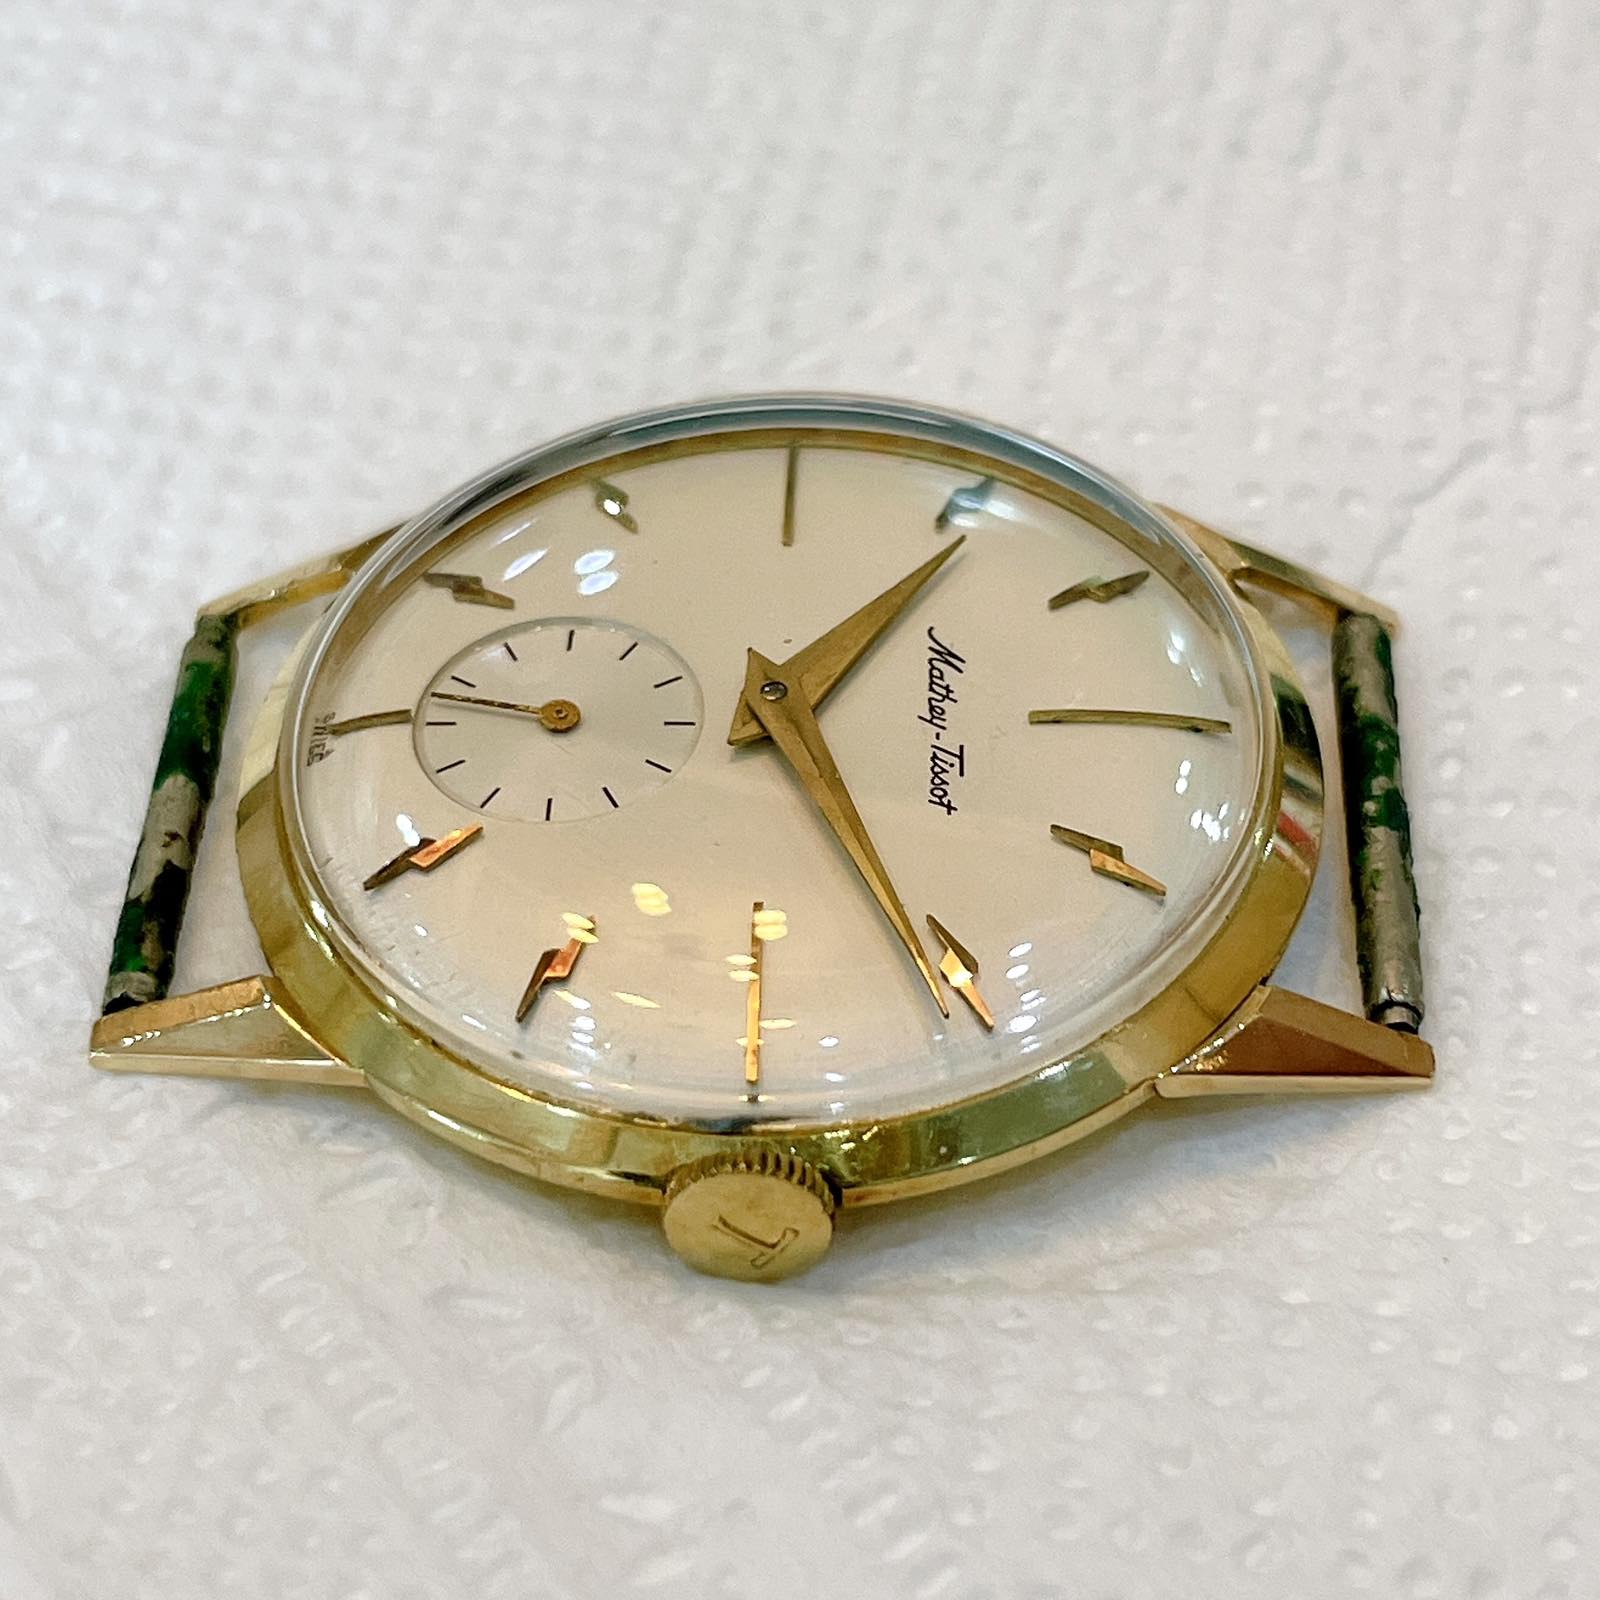 Đồng hồ cổ Mathey Tissot lên dây vàng đúc đặc 18k chính hãng thụy Sĩ 